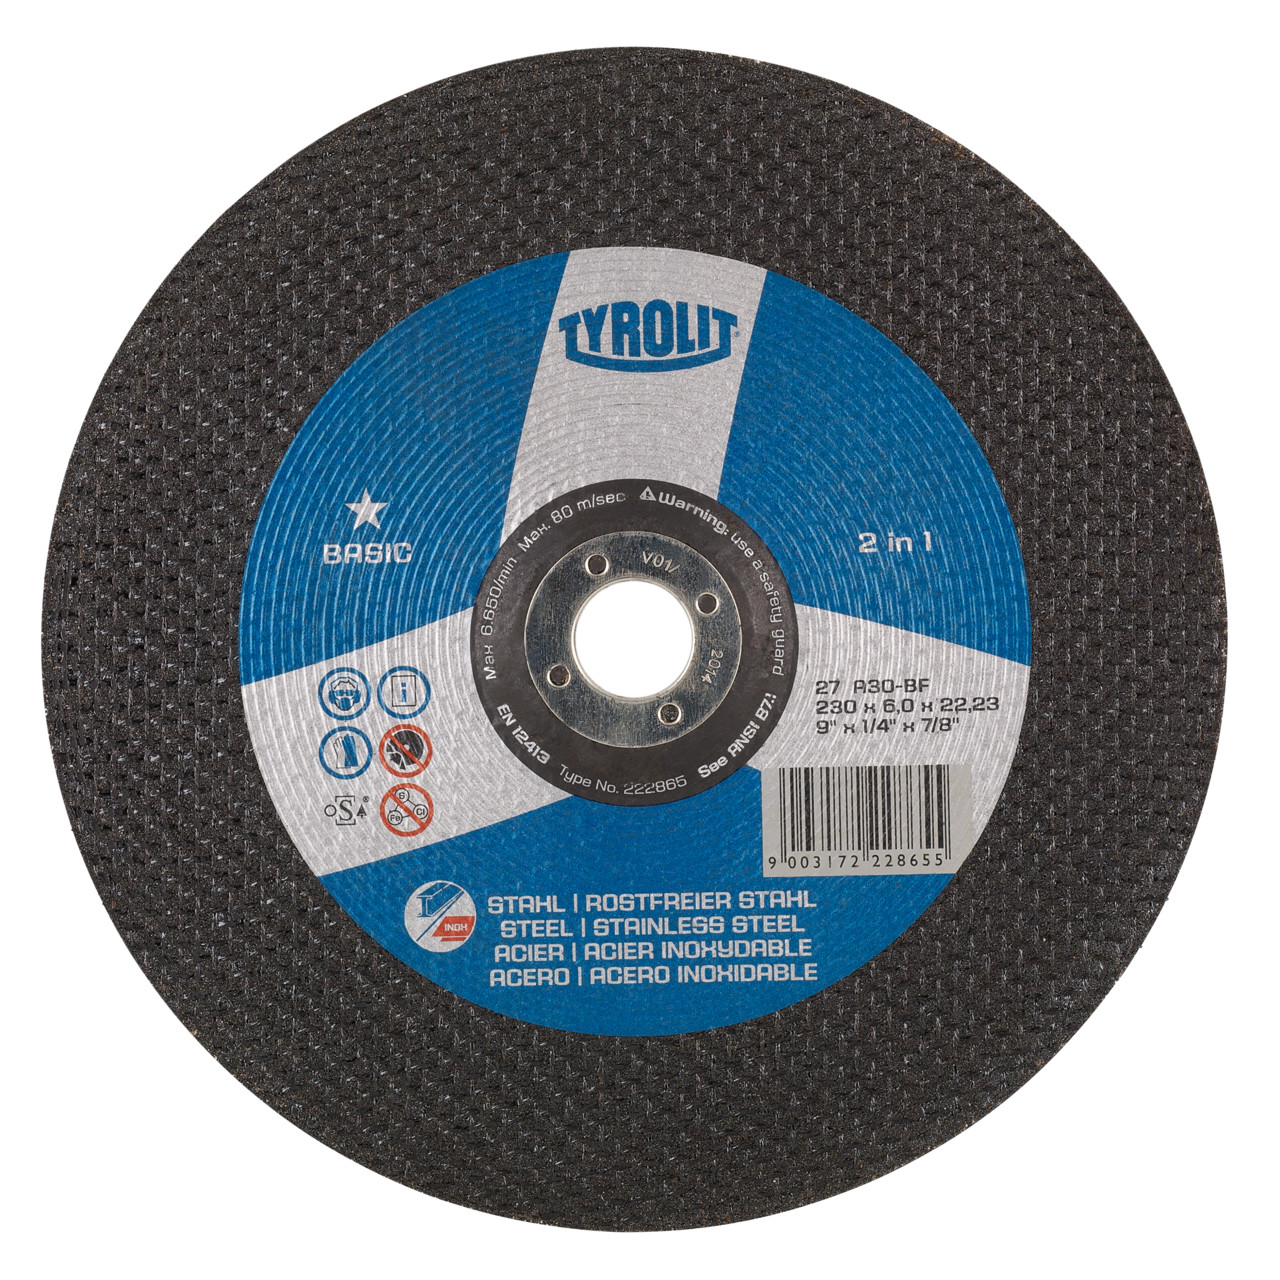 TYROLIT disco de desbaste DxUxH 115x4x22,23 2en1 para acero y acero inoxidable, forma: 27 - versión offset, Art. 34257184